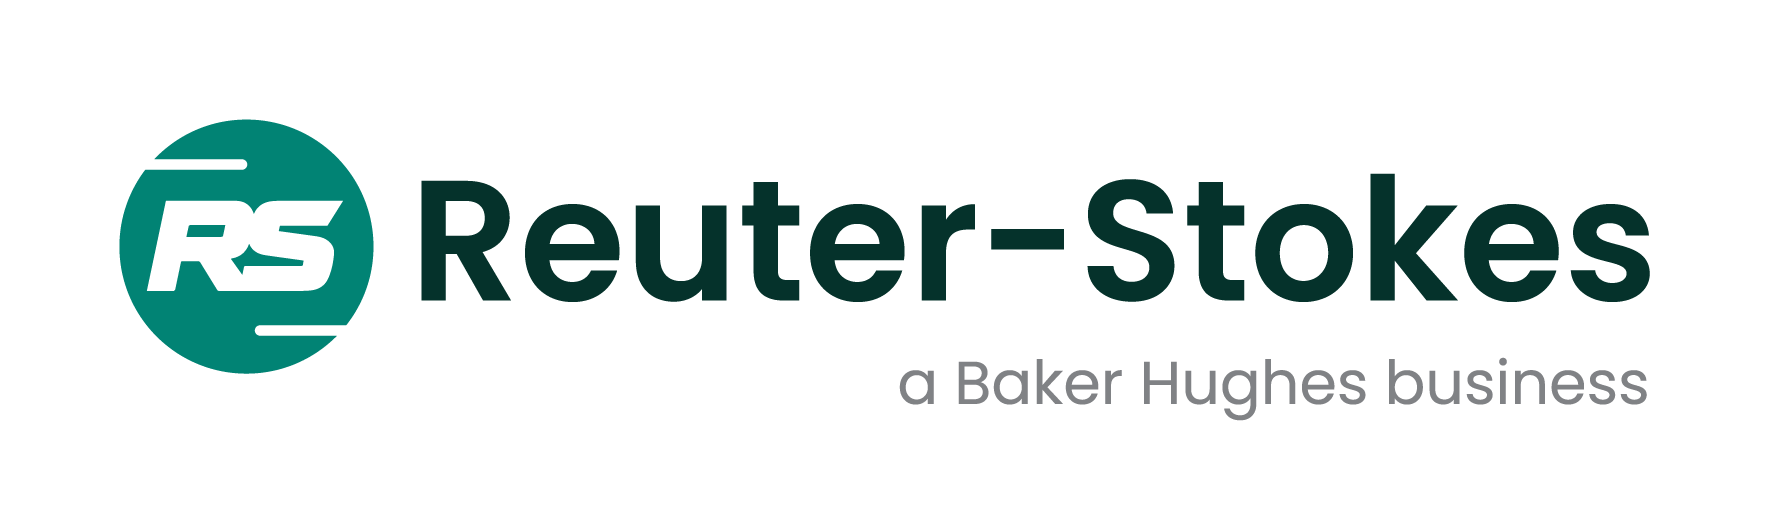 Reuter-Stokes, a Baker Hughes business 홈